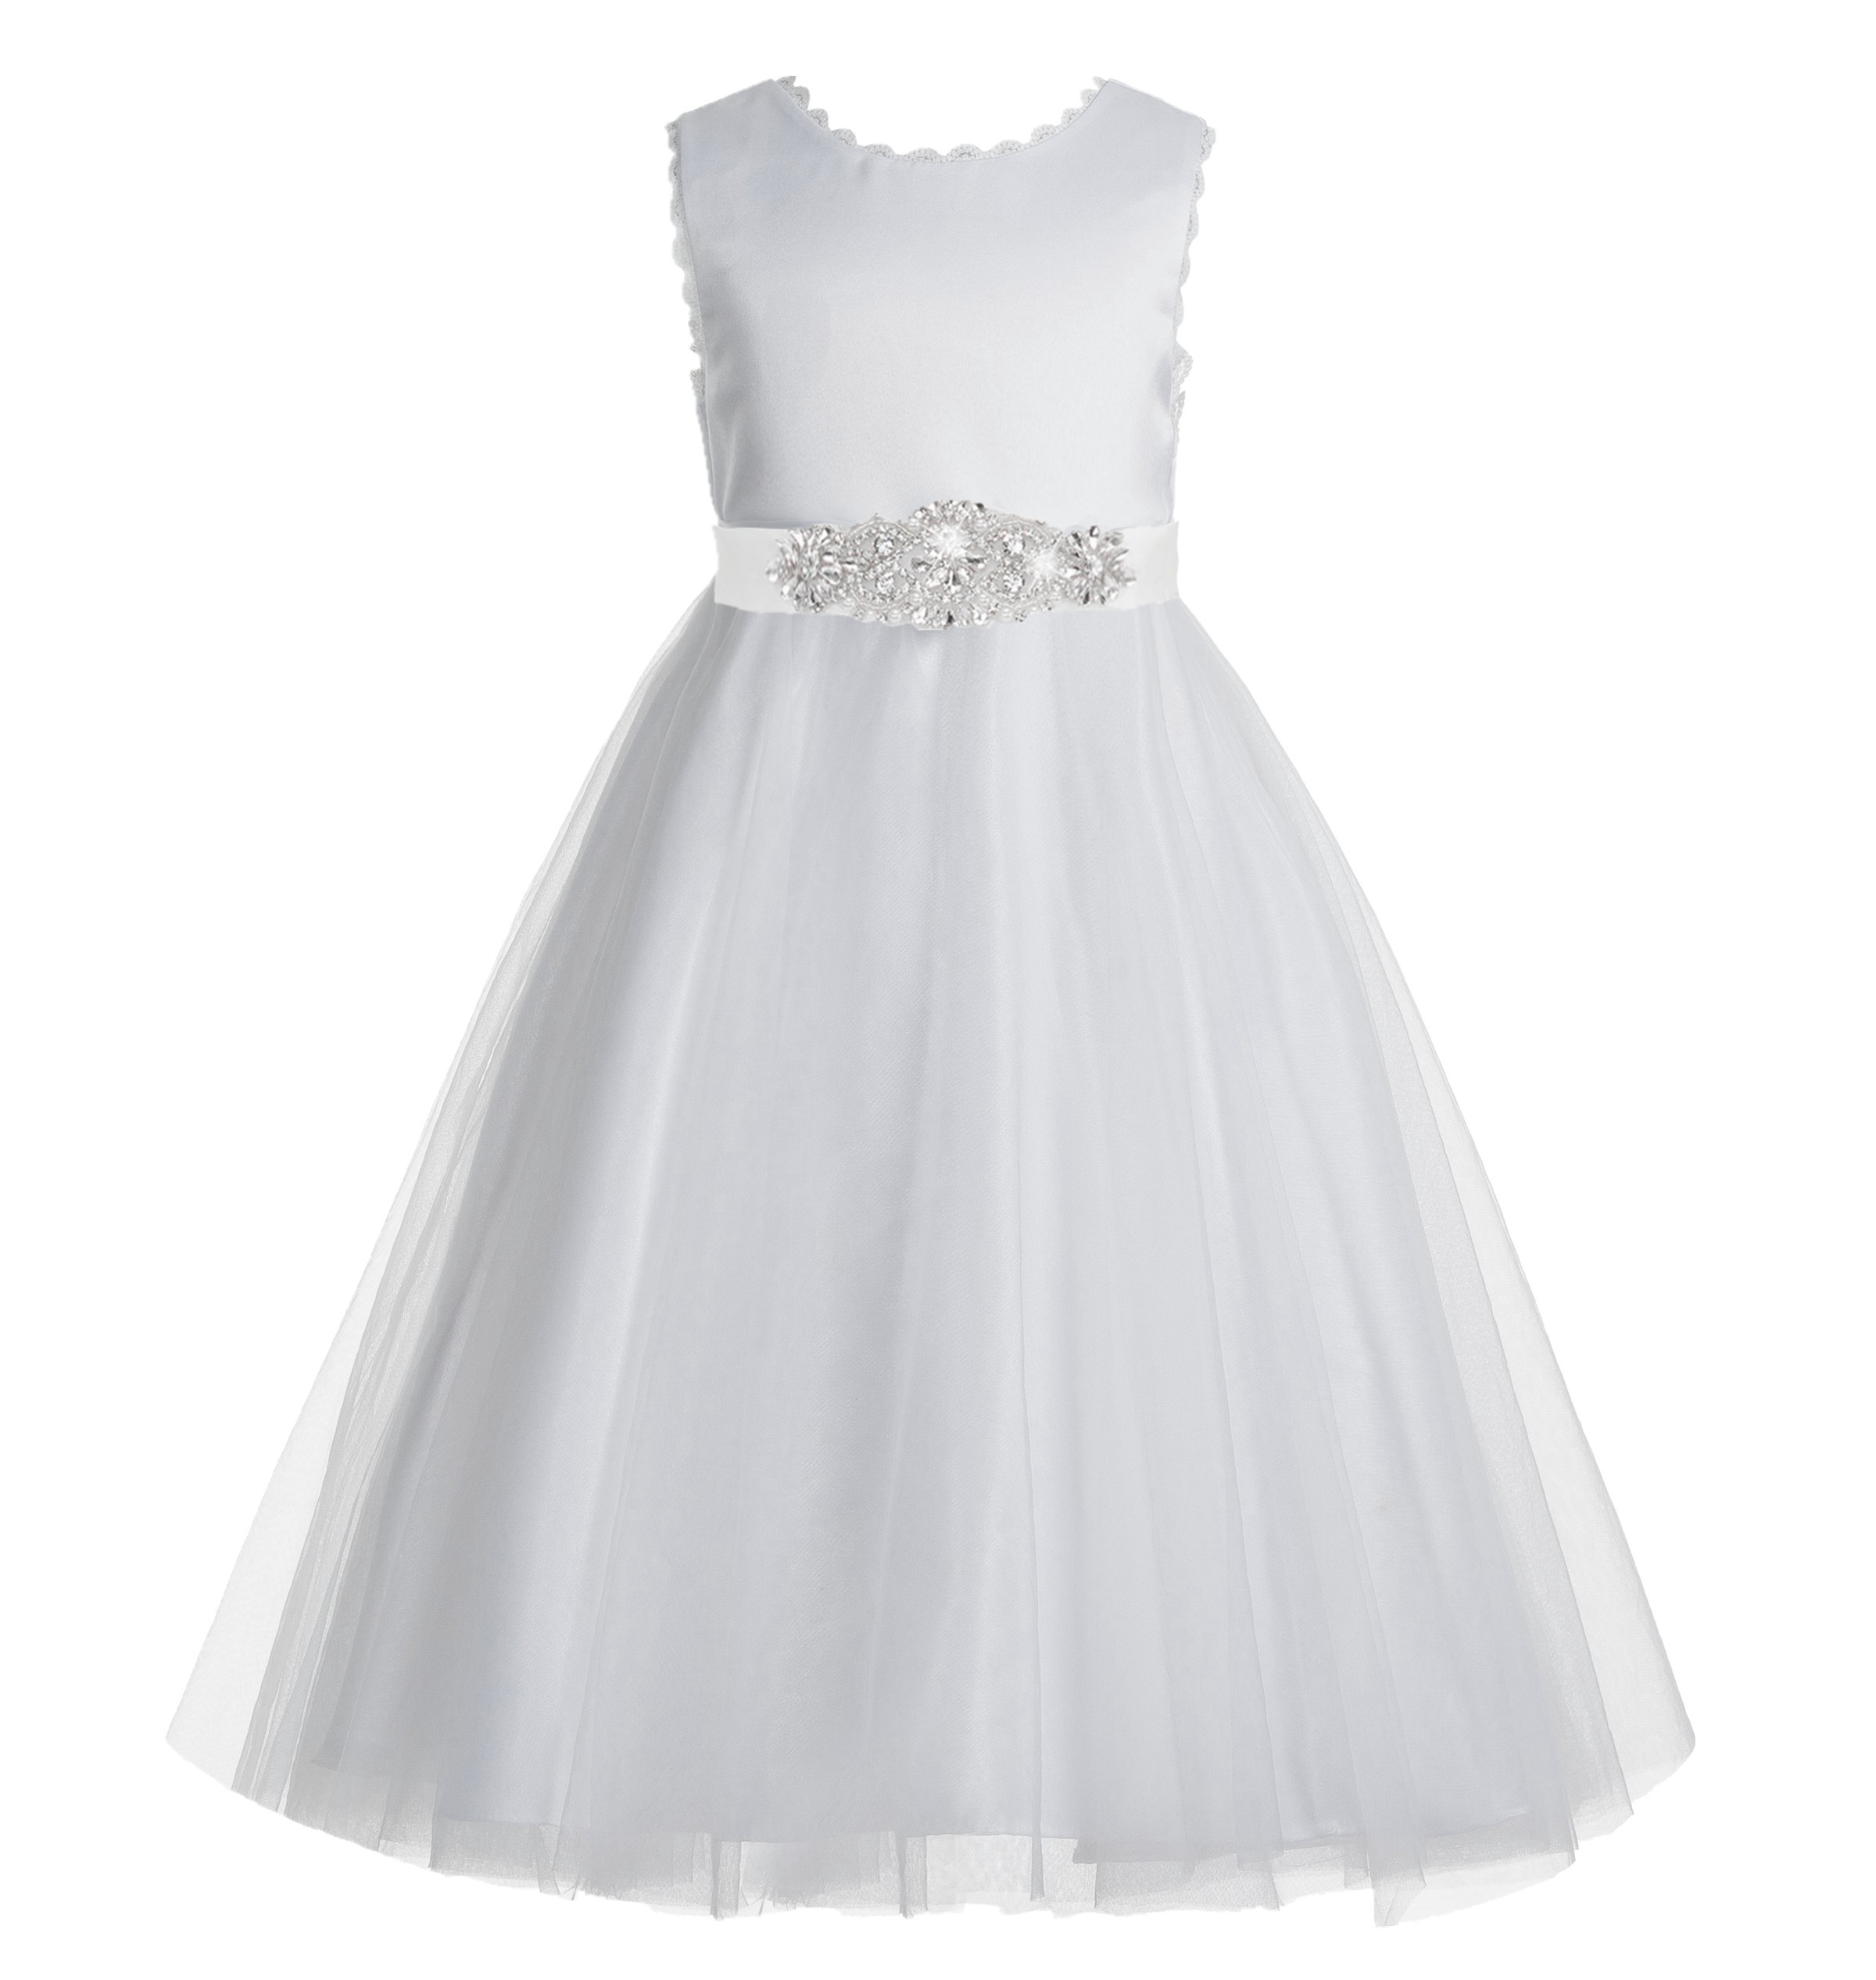 White V-Back Lace Edge Flower Girl Dress 183